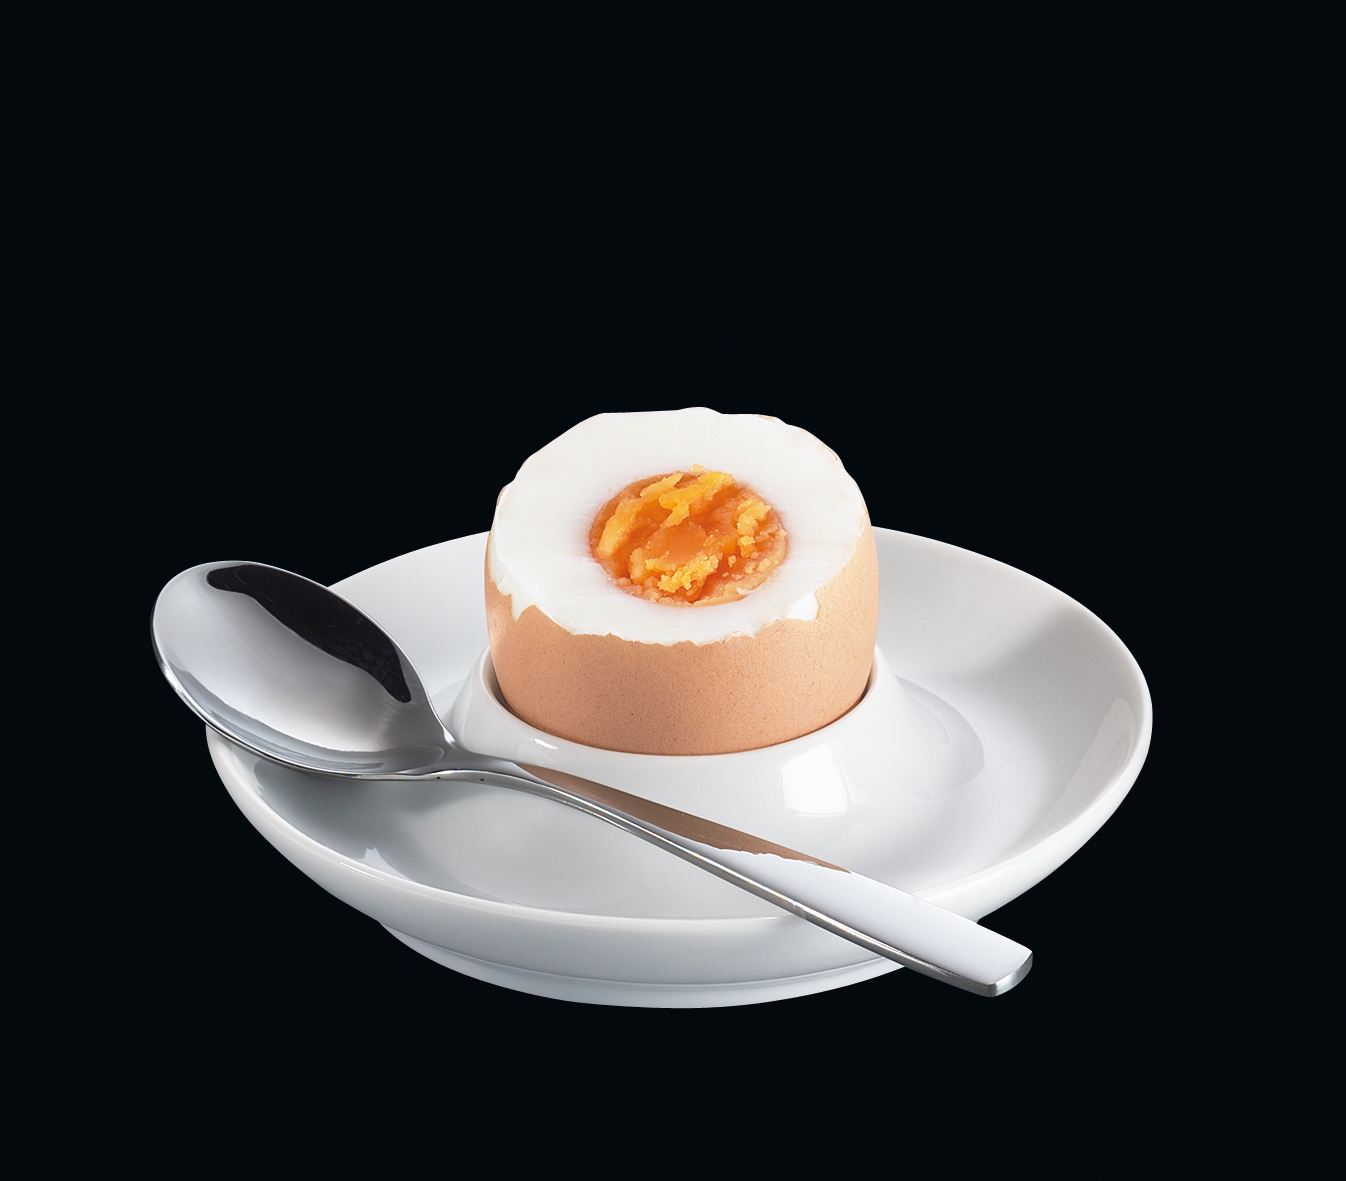 Kalíšek na vajíčka porcelánový - Cilio